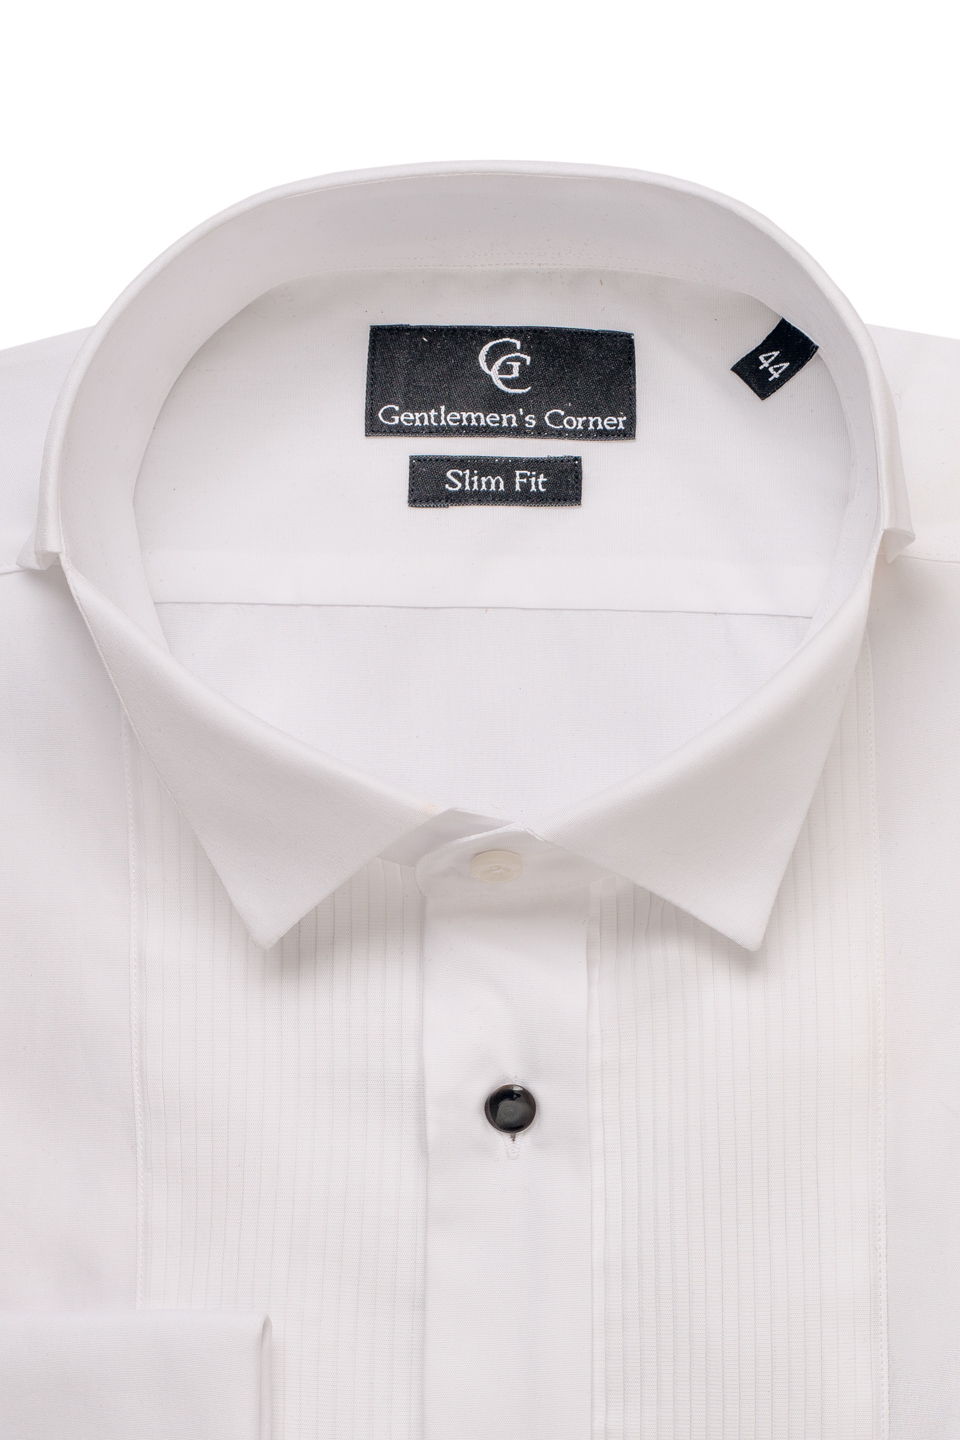 Webster White Dress Shirt - Collar